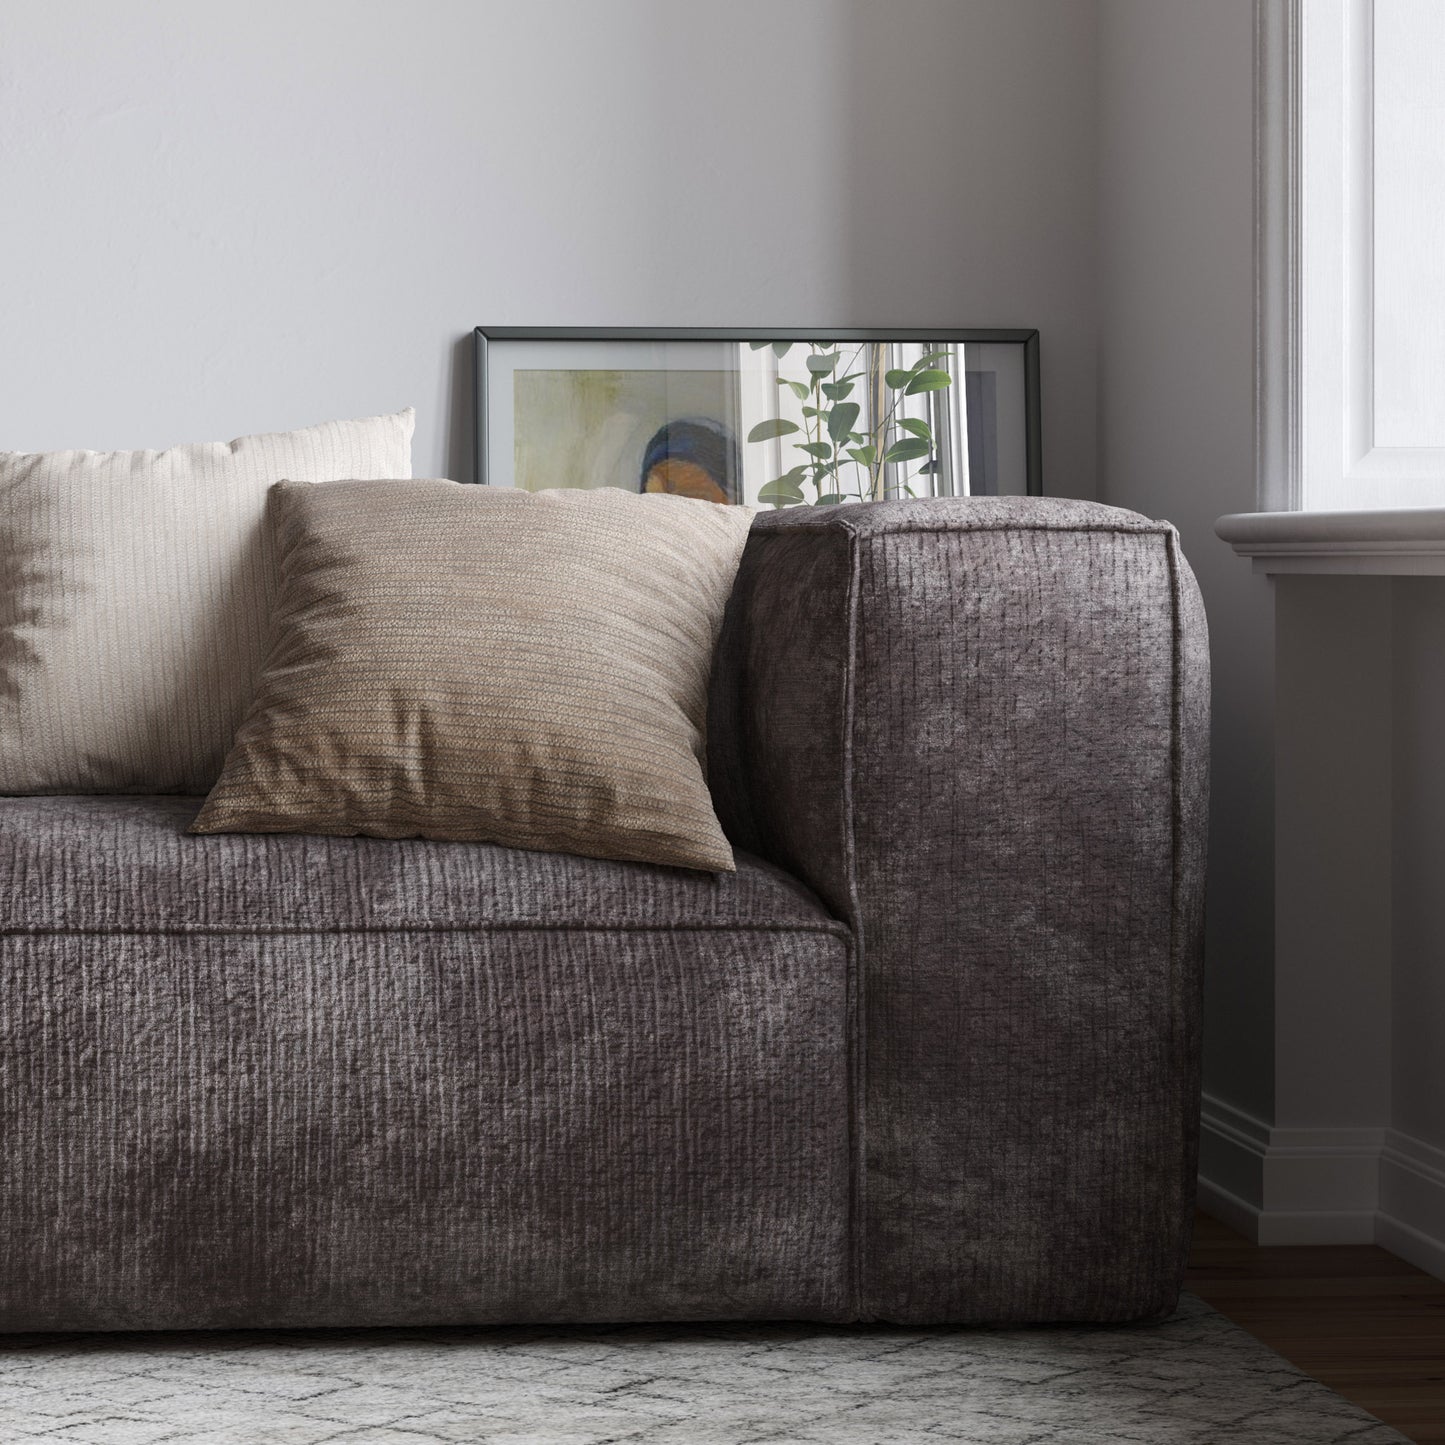 Inspo bild på en stor 4-sits soffa i grågrönt manchester tyg med en ljusgrå viskomatta